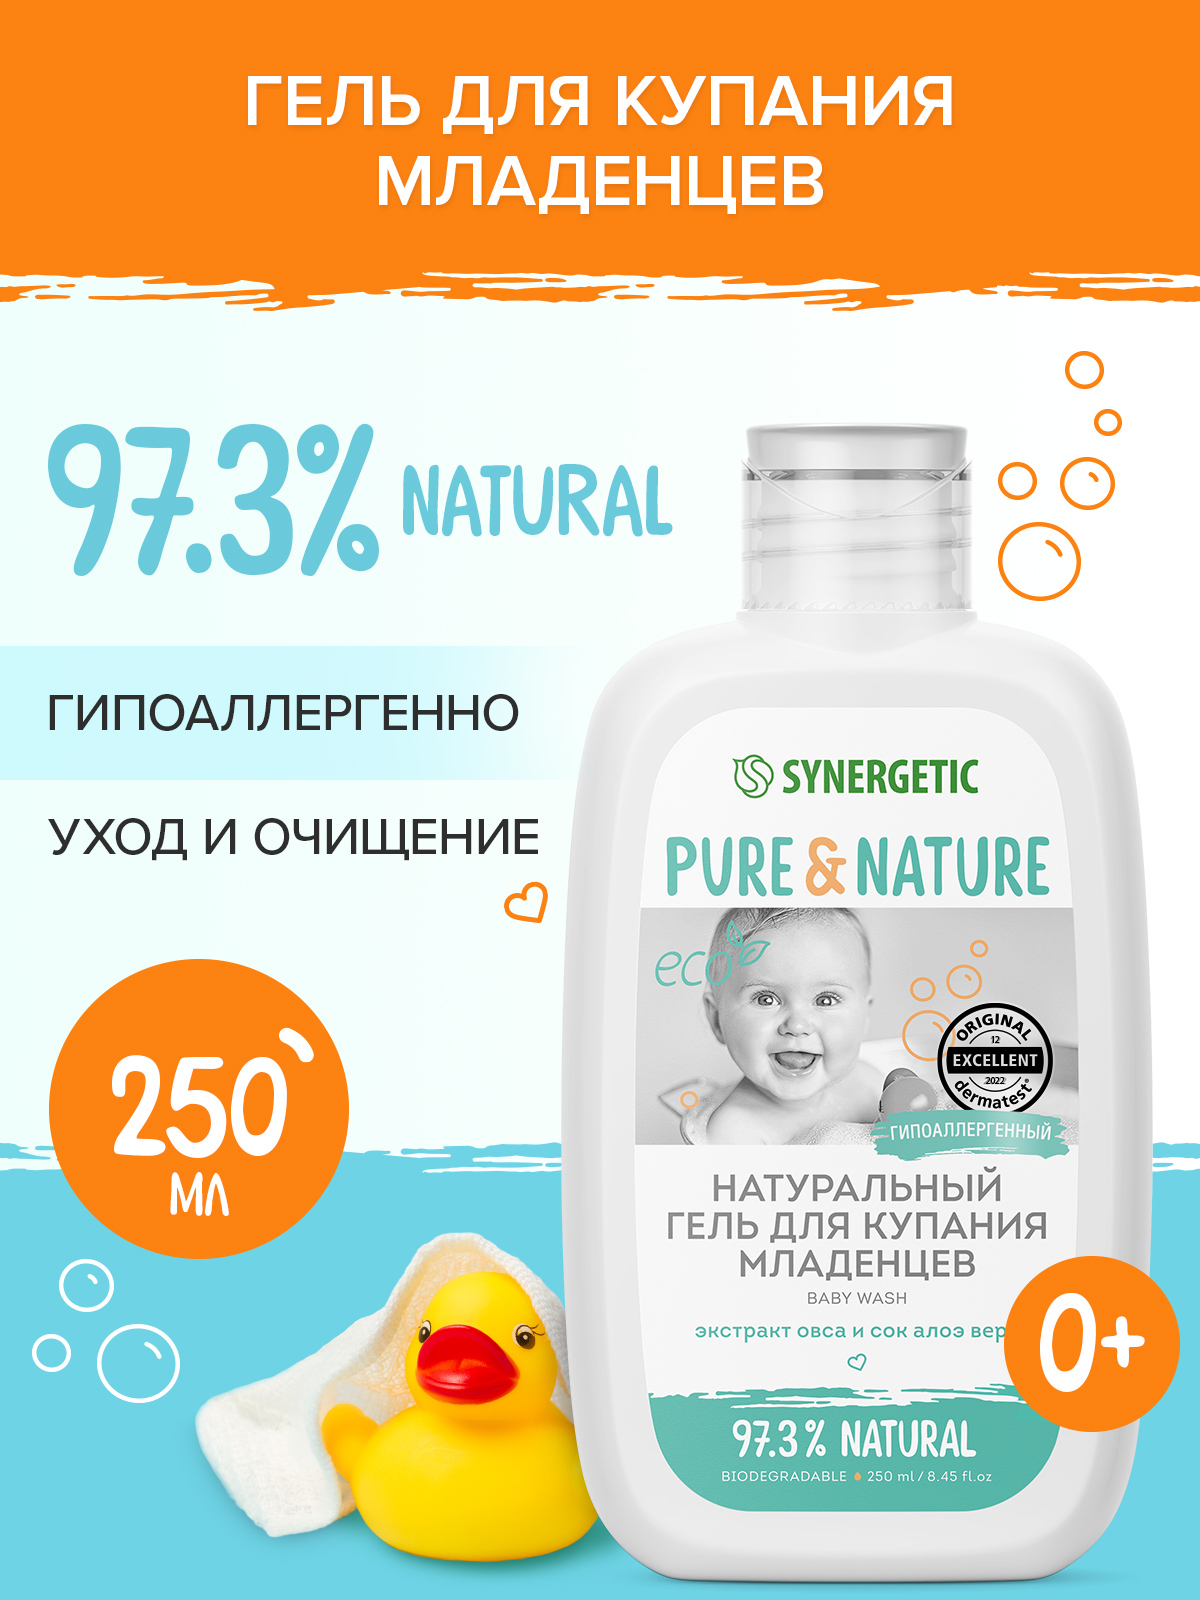 Натуральный гипоаллергенный гель для купания младенцев 0+ SYNERGETIC, 250мл натуральный биоразлагаемый гель для душа synergetic пачули и ароматный бергамот 3 5 л